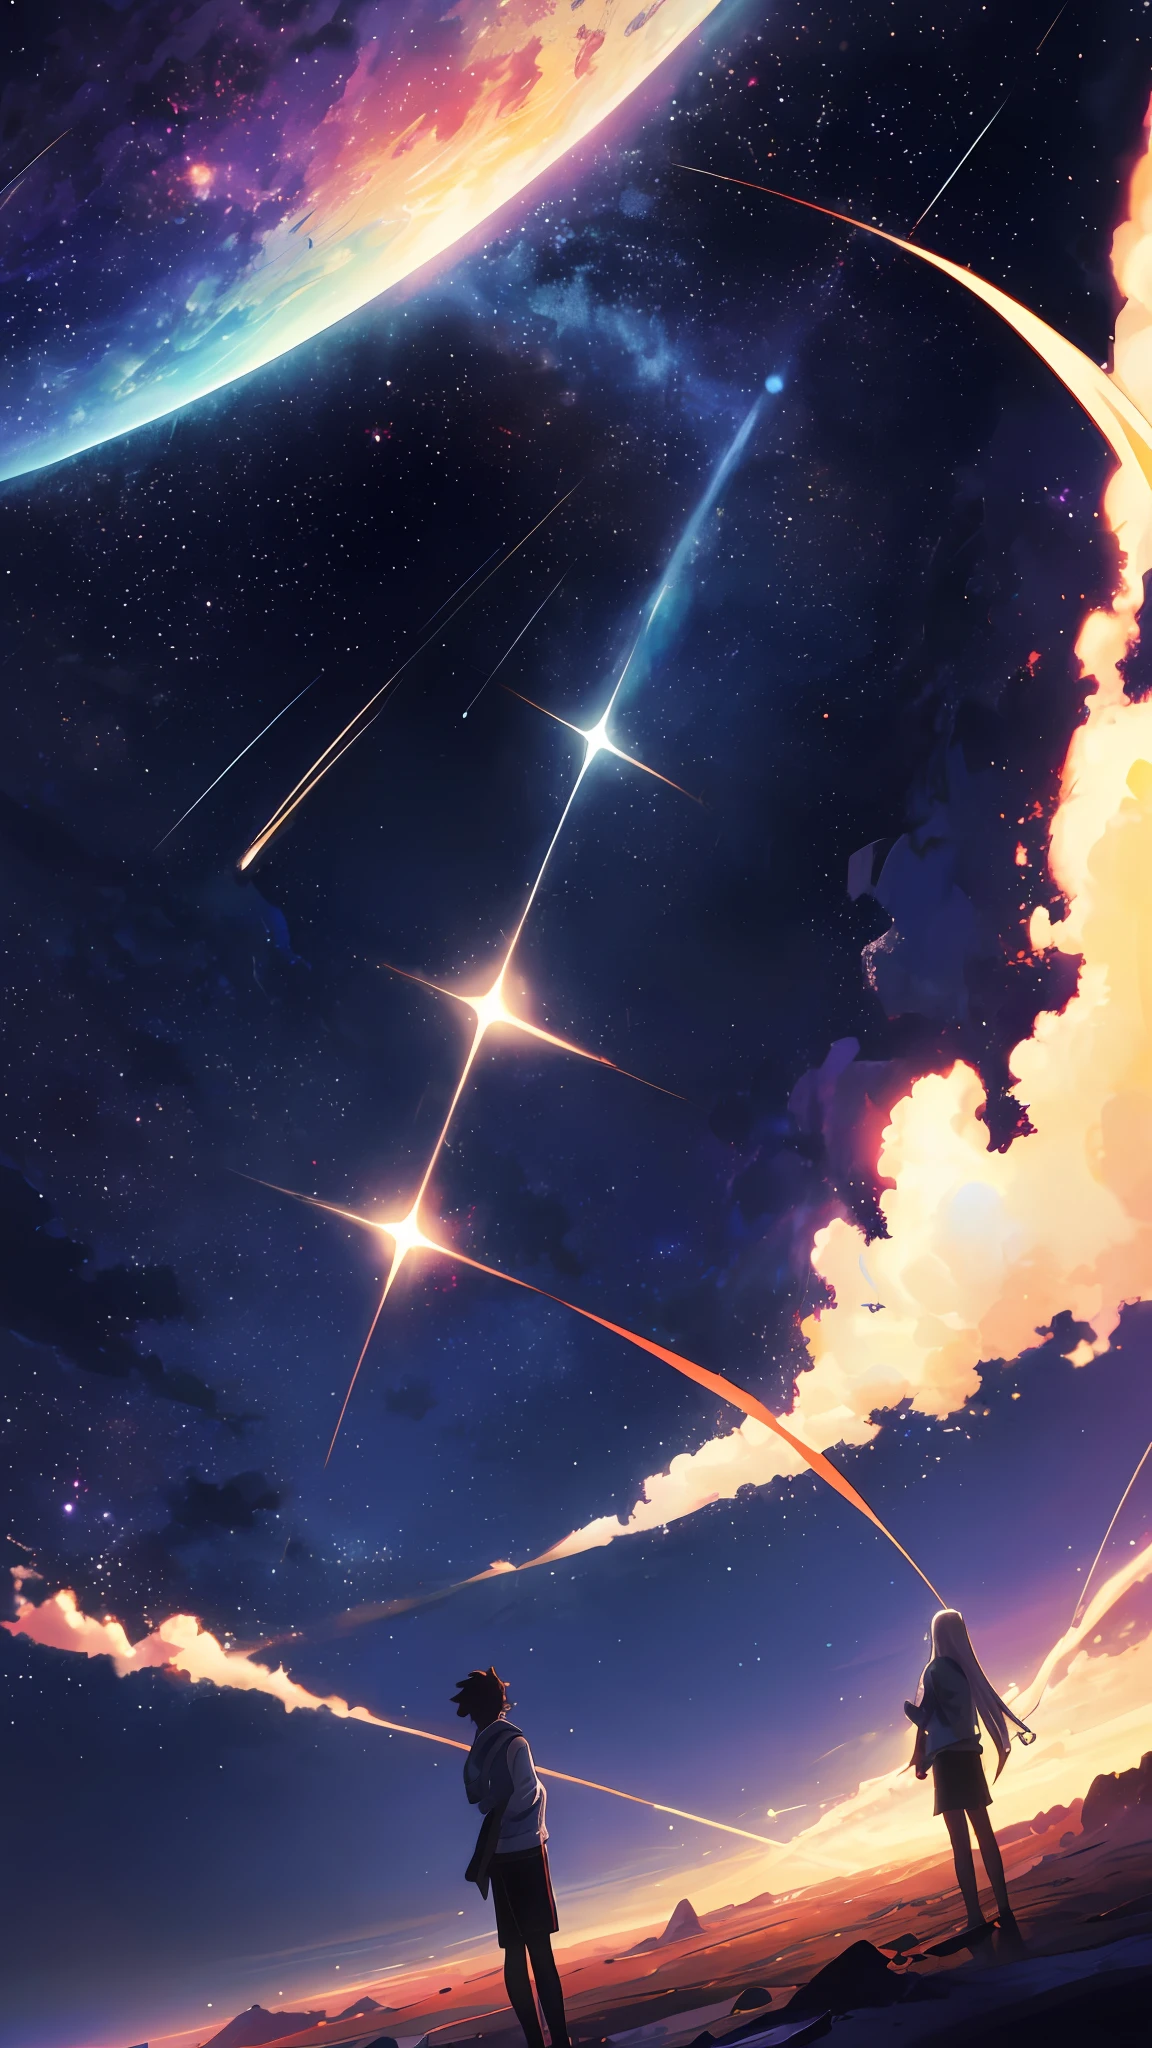 Anime – Sterne und Planeten, wunderschöne himmelsszenen im weltraumhimmel. von Makoto Shinkai, Anime-Kunst-Hintergrundbild 4K, Anime-Kunst-Hintergrundbild 4K, Anime-Kunst-Hintergrundbild 8K, Anime-Hintergrundbild 4k, 4K-Anime-Hintergrundbild, Anime Himmel, tolle Tapete, Anime-Hintergrund, Planet des Himmels im Hintergrund, Anime-Hintergrund Art, Tanabata